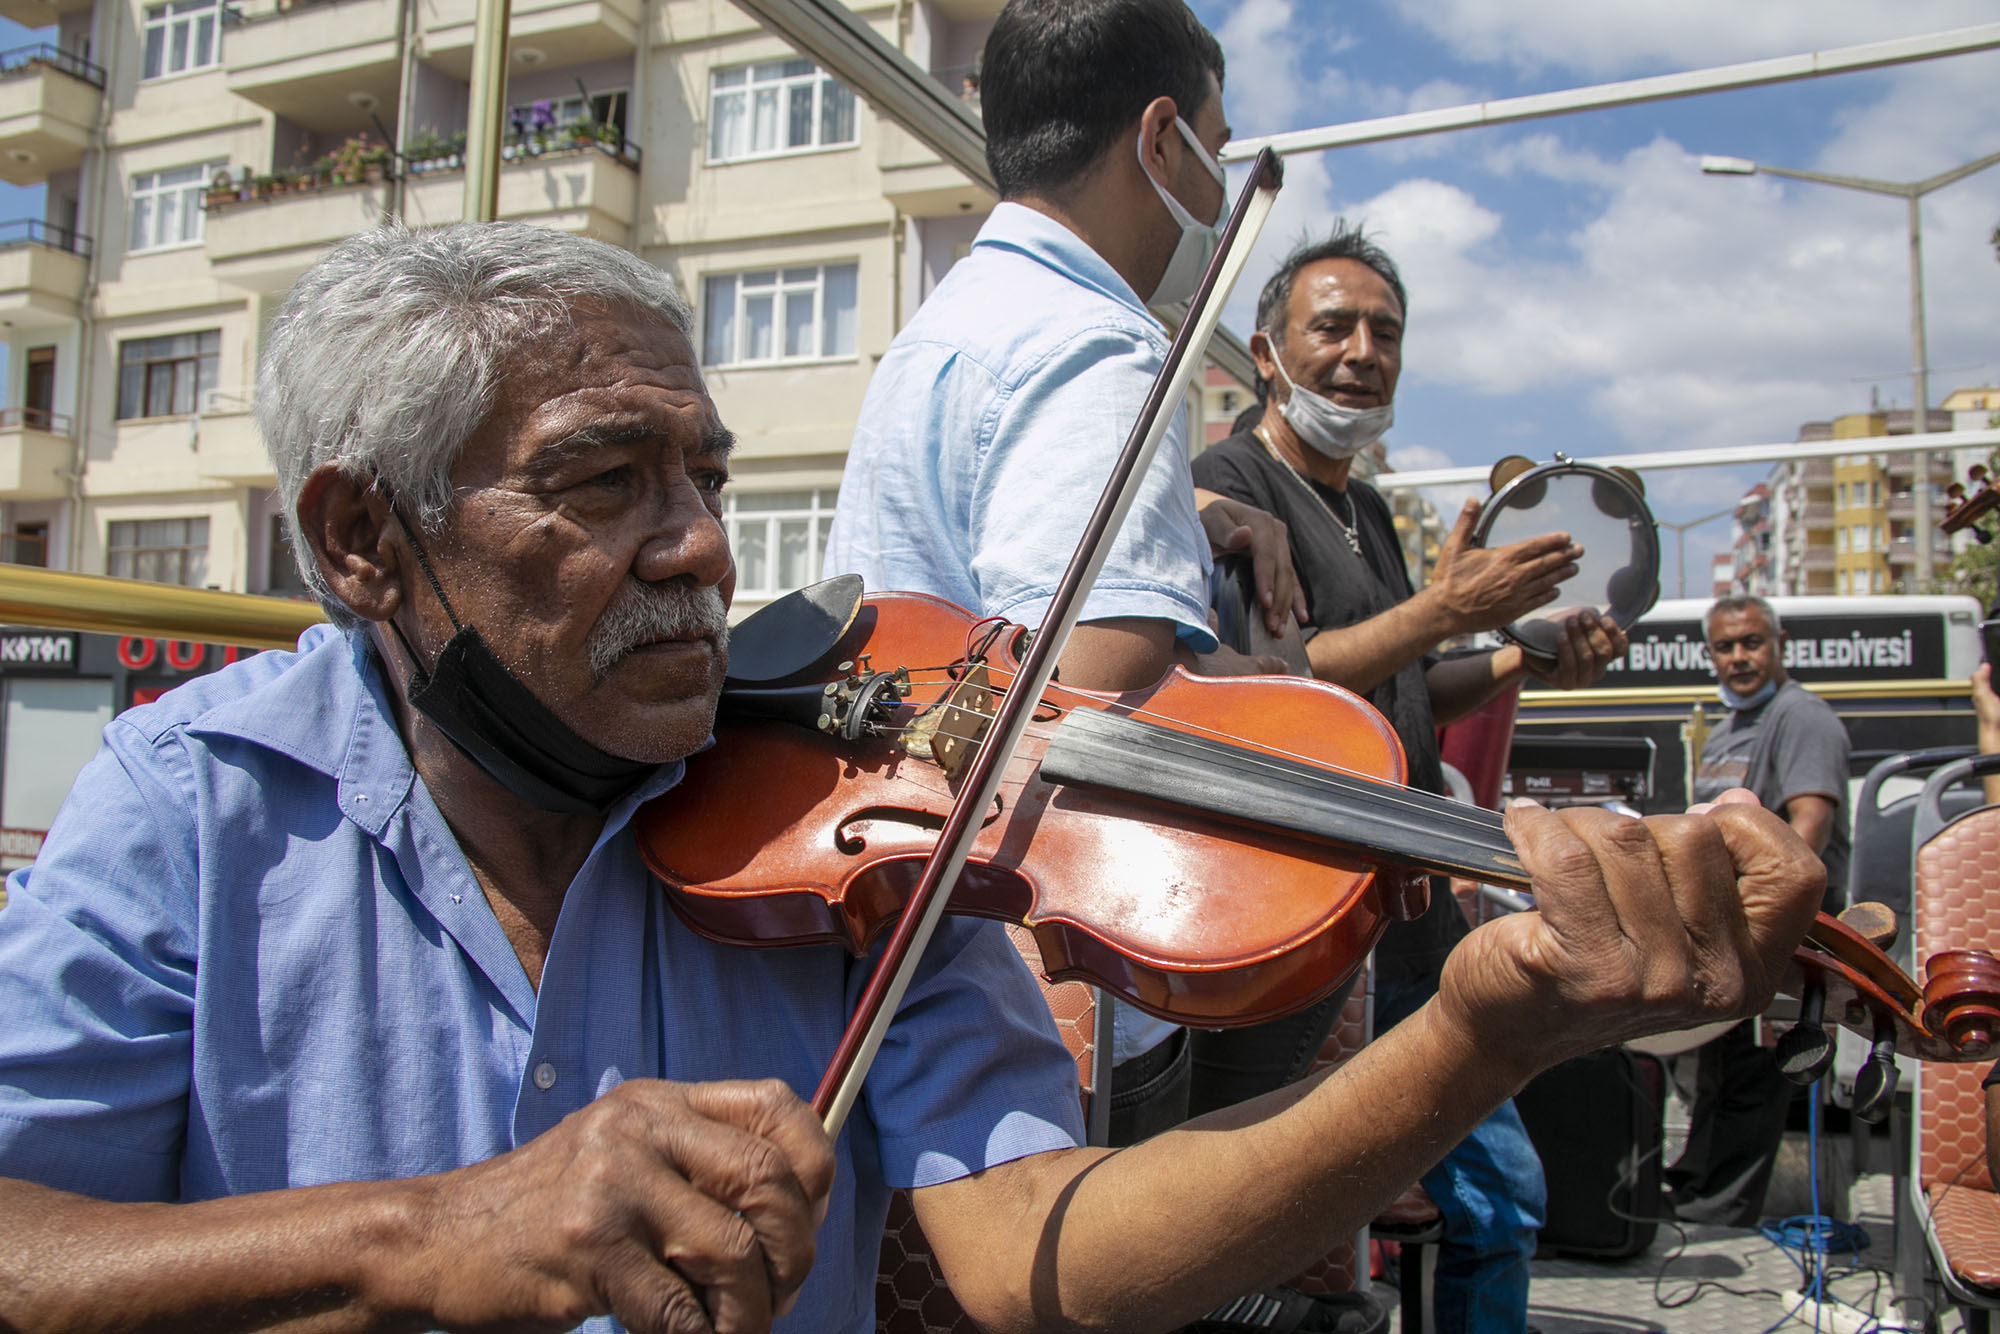  Mersin Büyükşehir’den Silifkeli Roman Müzisyenlere Destek